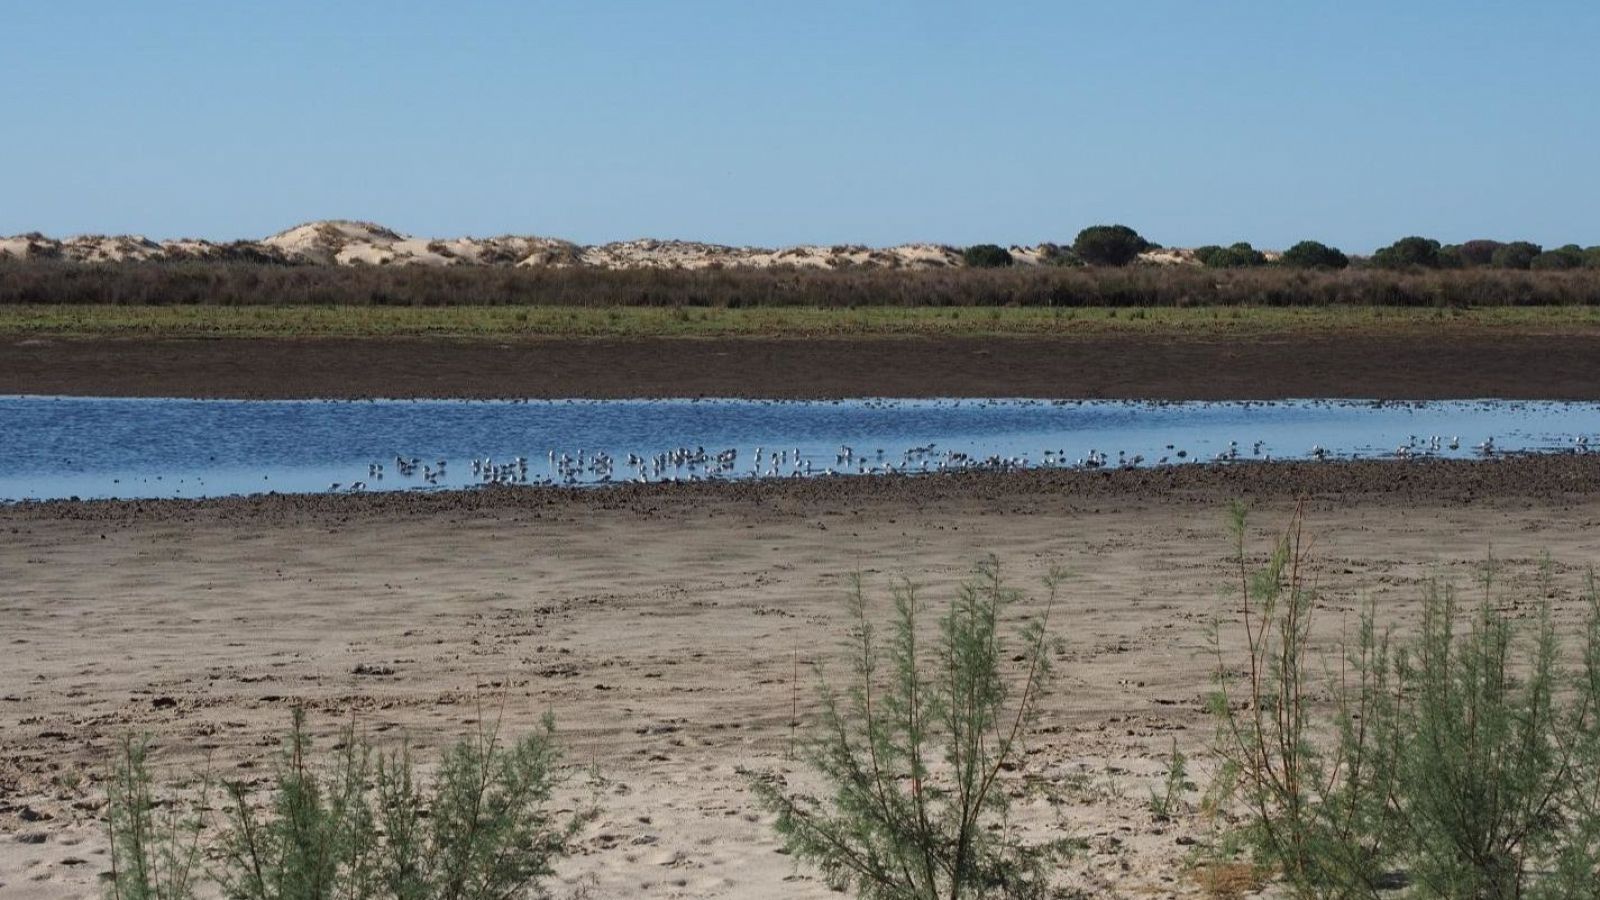 Aves descansando en la laguna de Santa Olalla de Doñana.